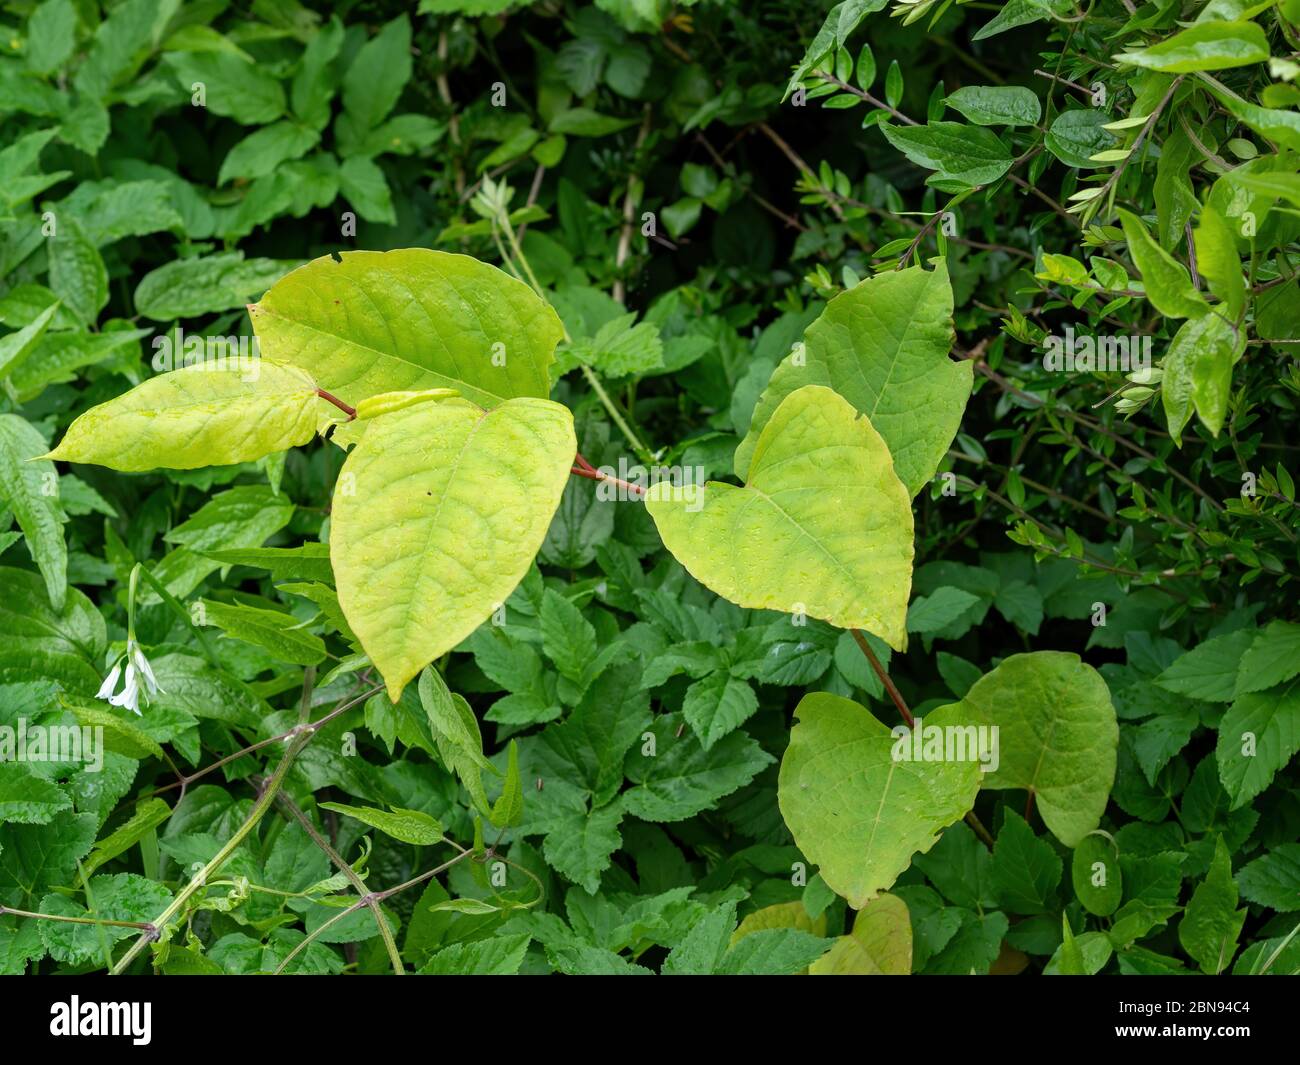 Le noued japonais, plante envahissante alias Reynoutria japonica, Fallopia japonica et Polygonum cuspidatum. ROYAUME-UNI. Pousses de printemps. Banque D'Images